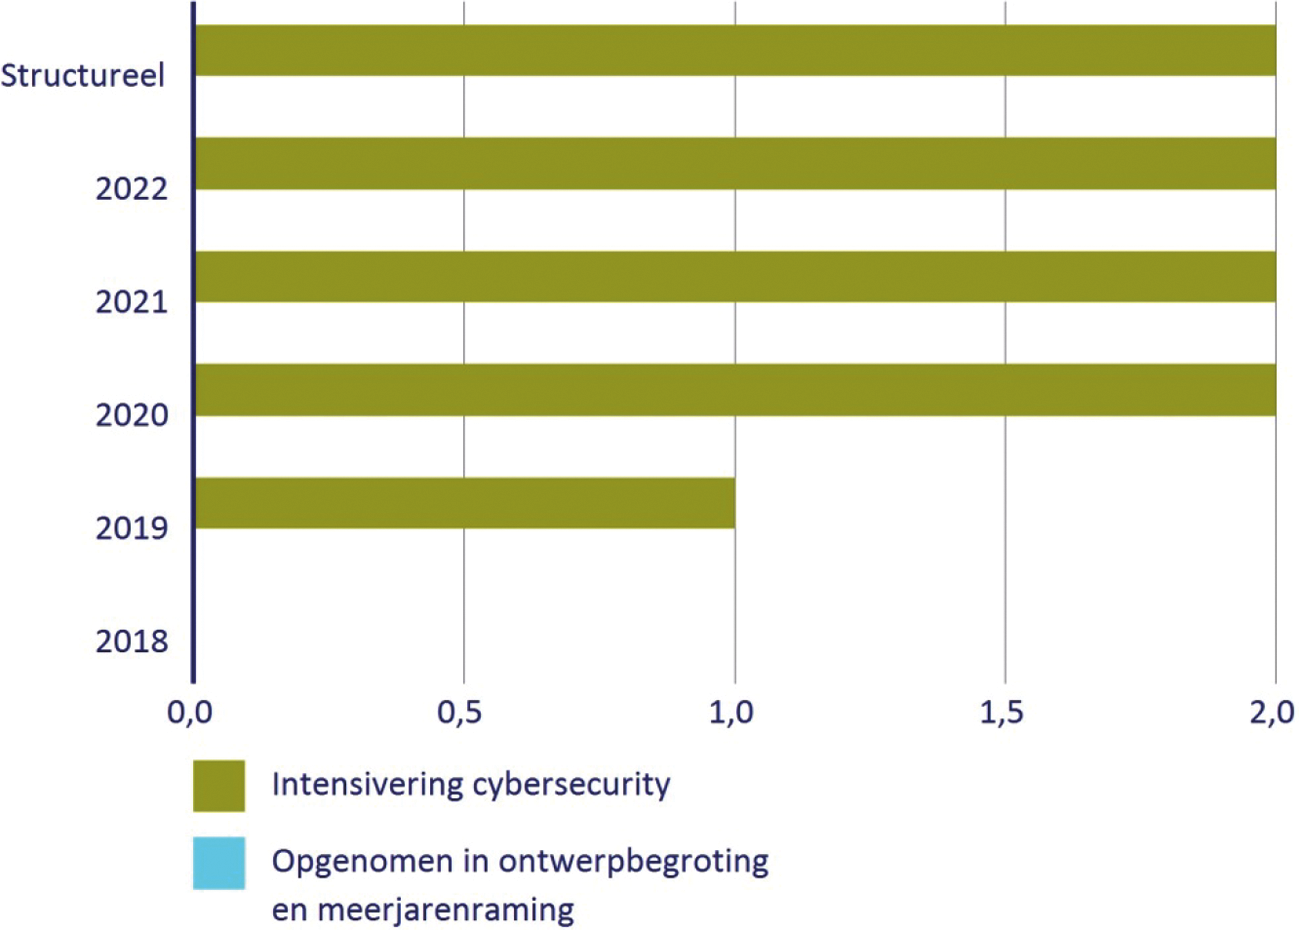 Intensivering cybersecurity (in miljoenen euro’s)